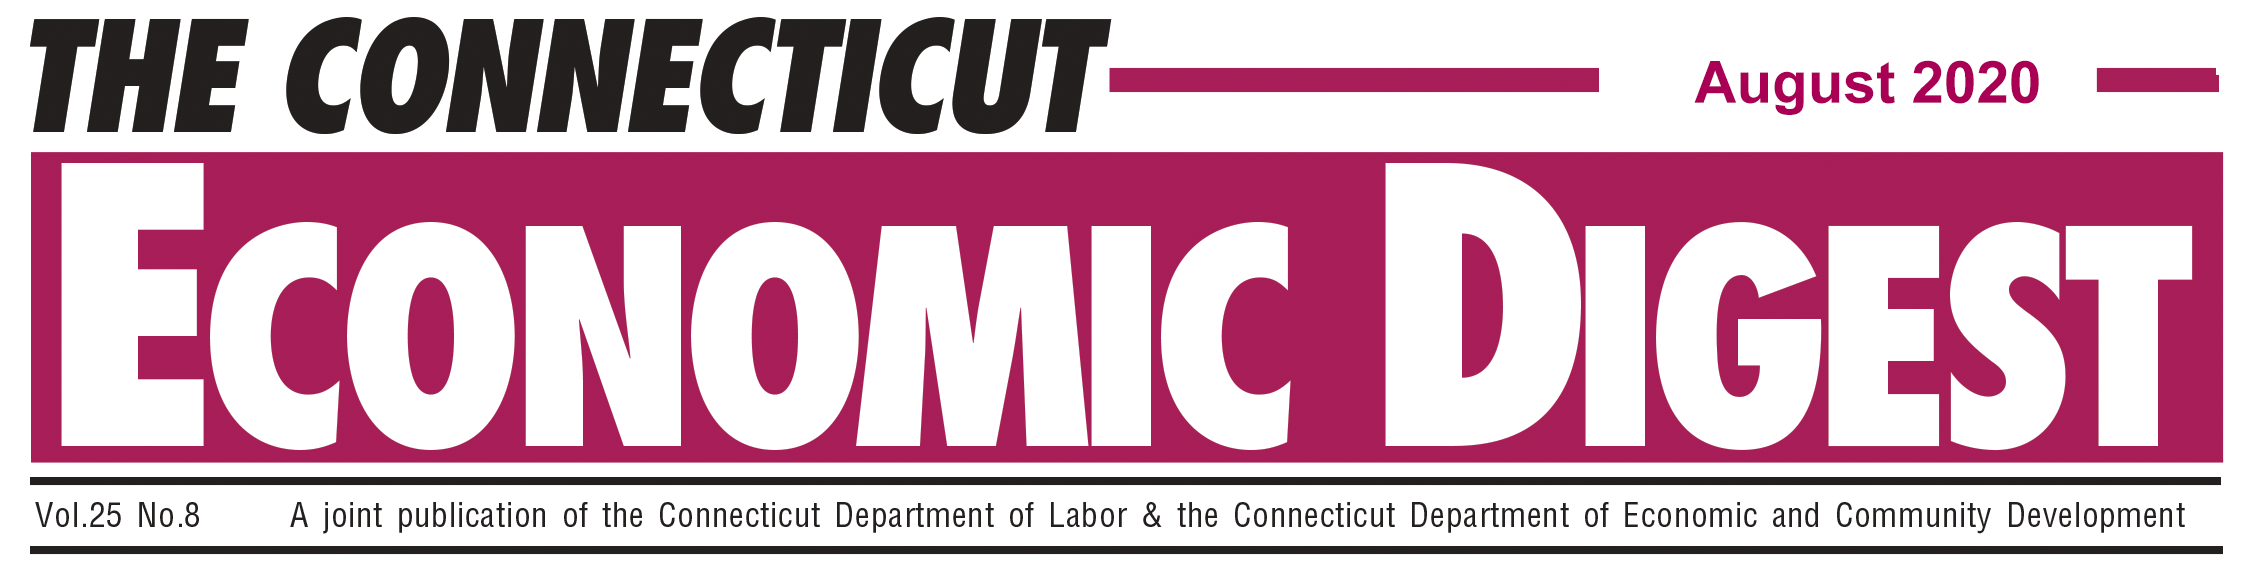 August 2020 Connecticut Economic Digest